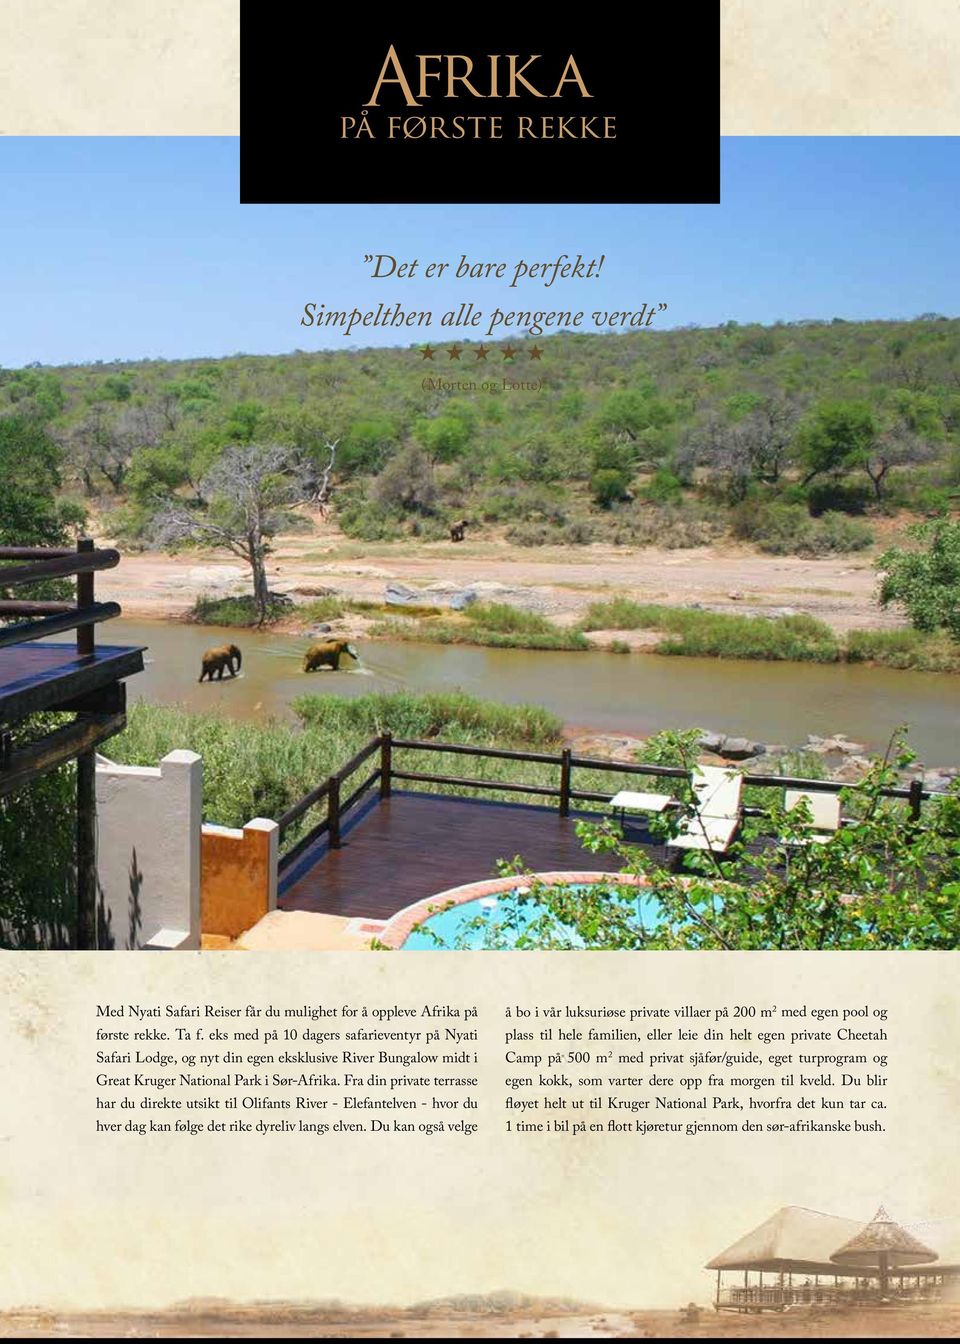 Fra din private terrasse har du direkte utsikt til Olifants River - Elefantelven - hvor du hver dag kan følge det rike dyreliv langs elven.